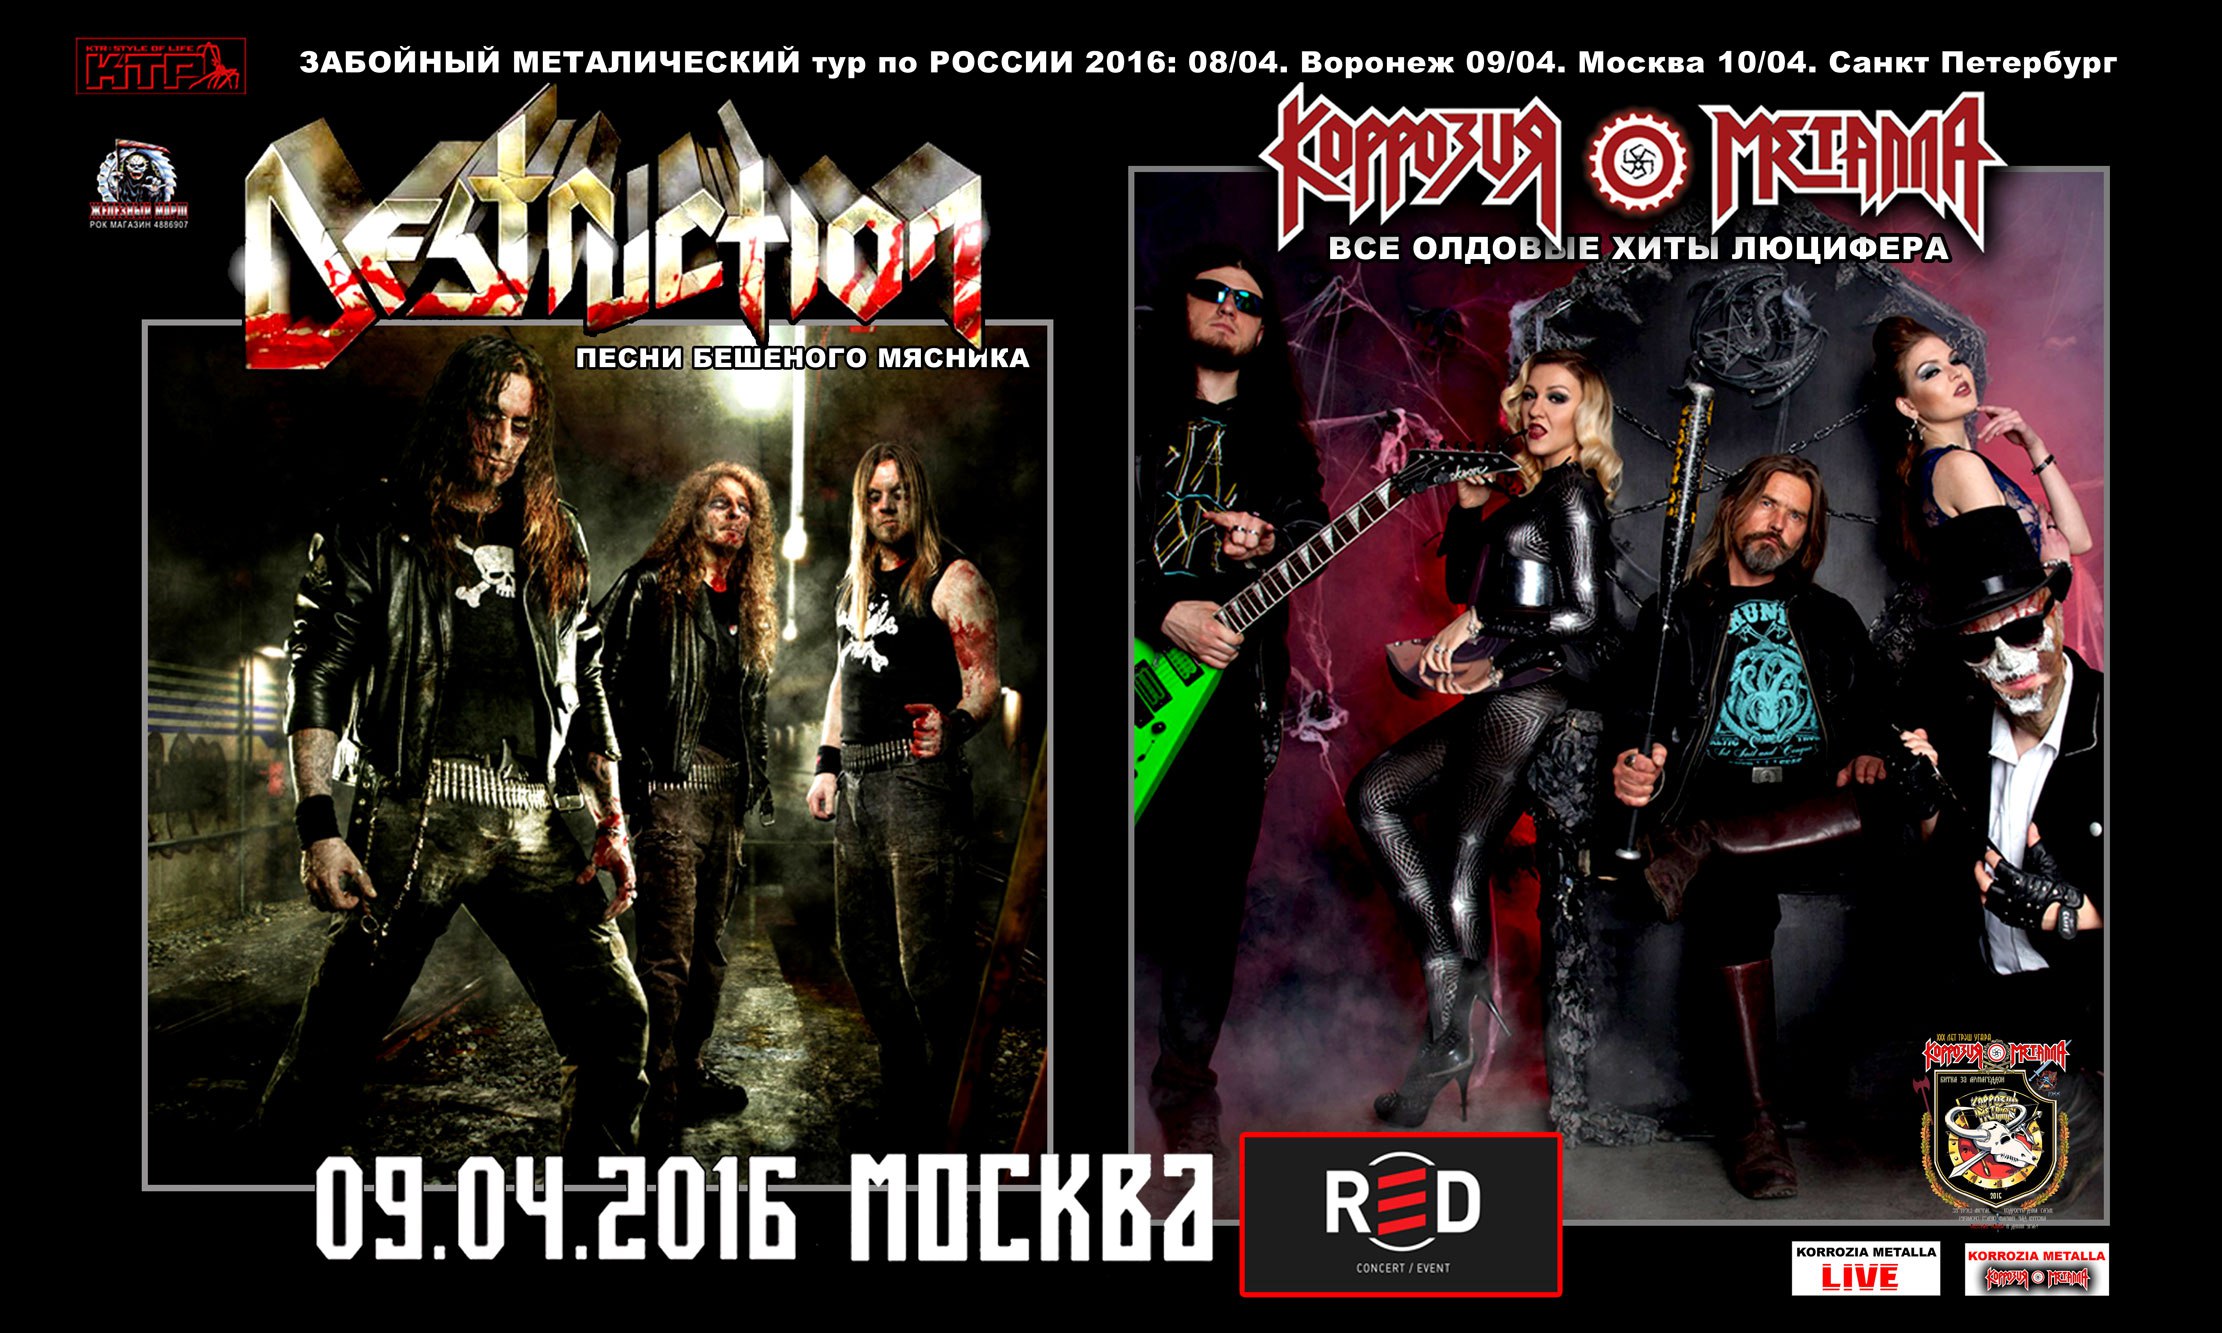 DESTRUCTION + КОРРОЗИЯ МЕТАЛЛА metal тур по РОССИИ 2016